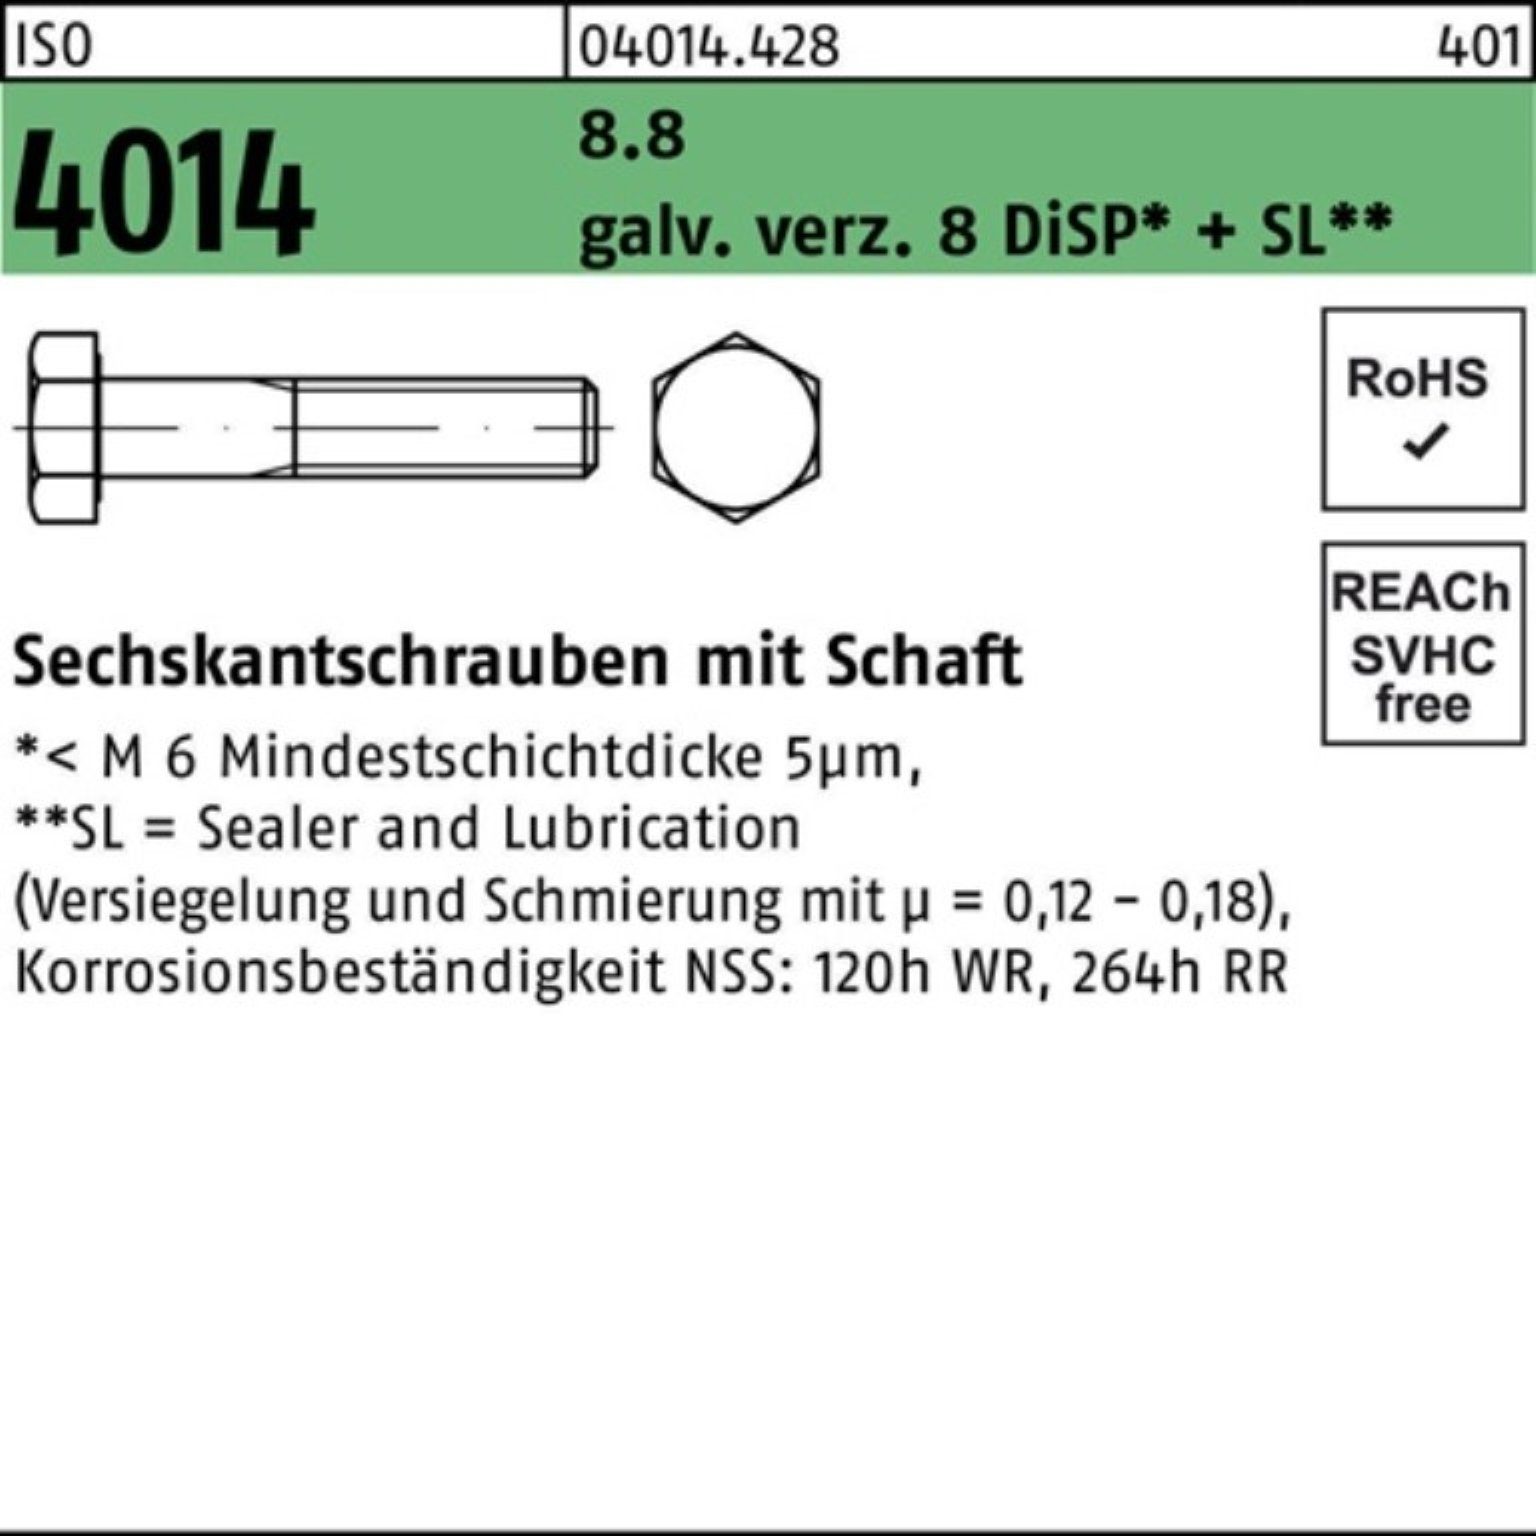 Bufab Sechskantschraube 100er Pack Sechskantschraube ISO 4014 Schaft M10x140 8.8 galv.verz. 8